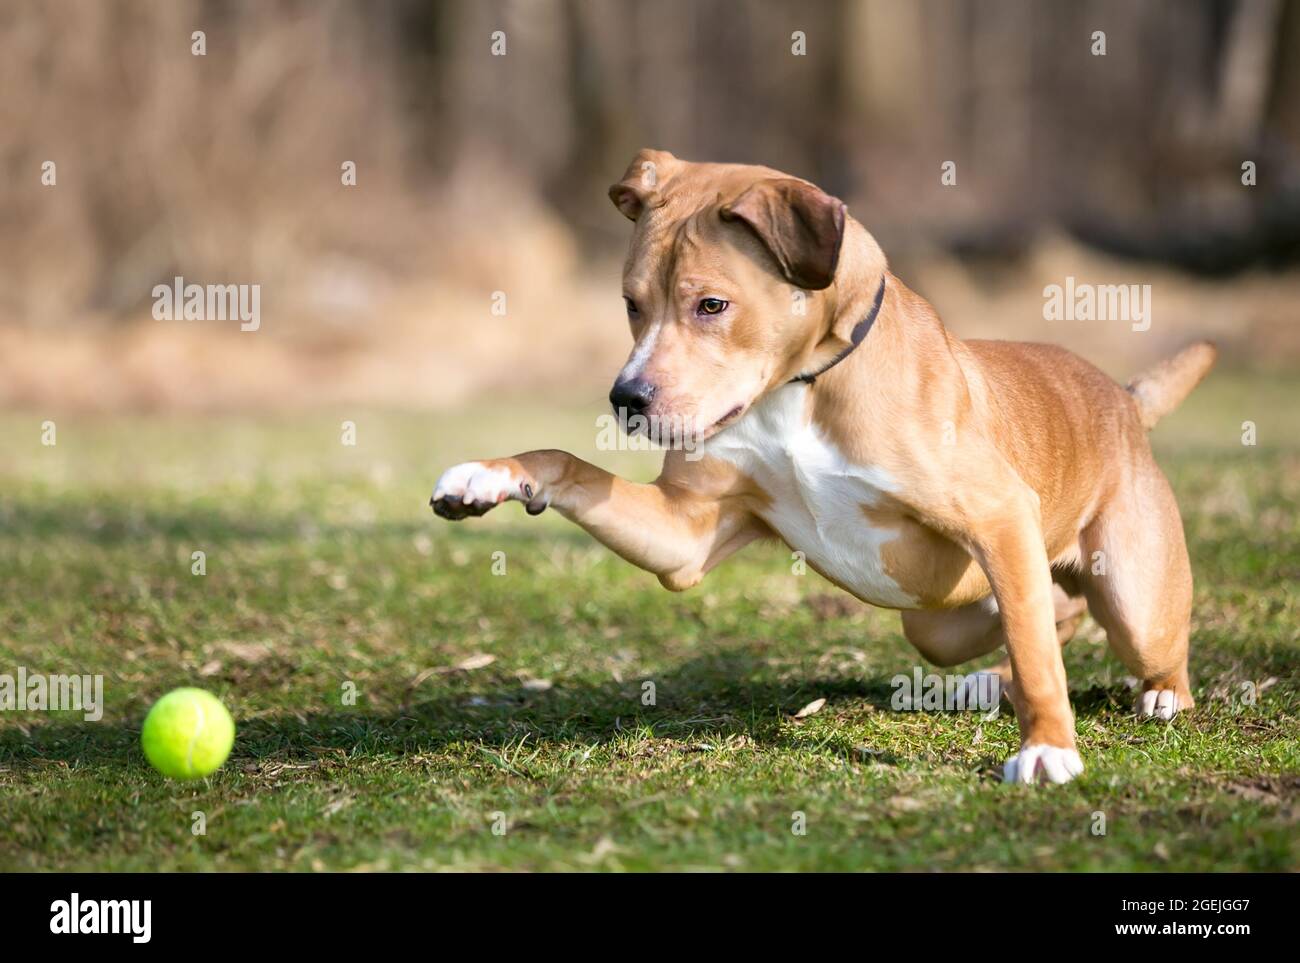 Un chien mixte de race Retriever jouant avec un ballon en plein air Banque D'Images